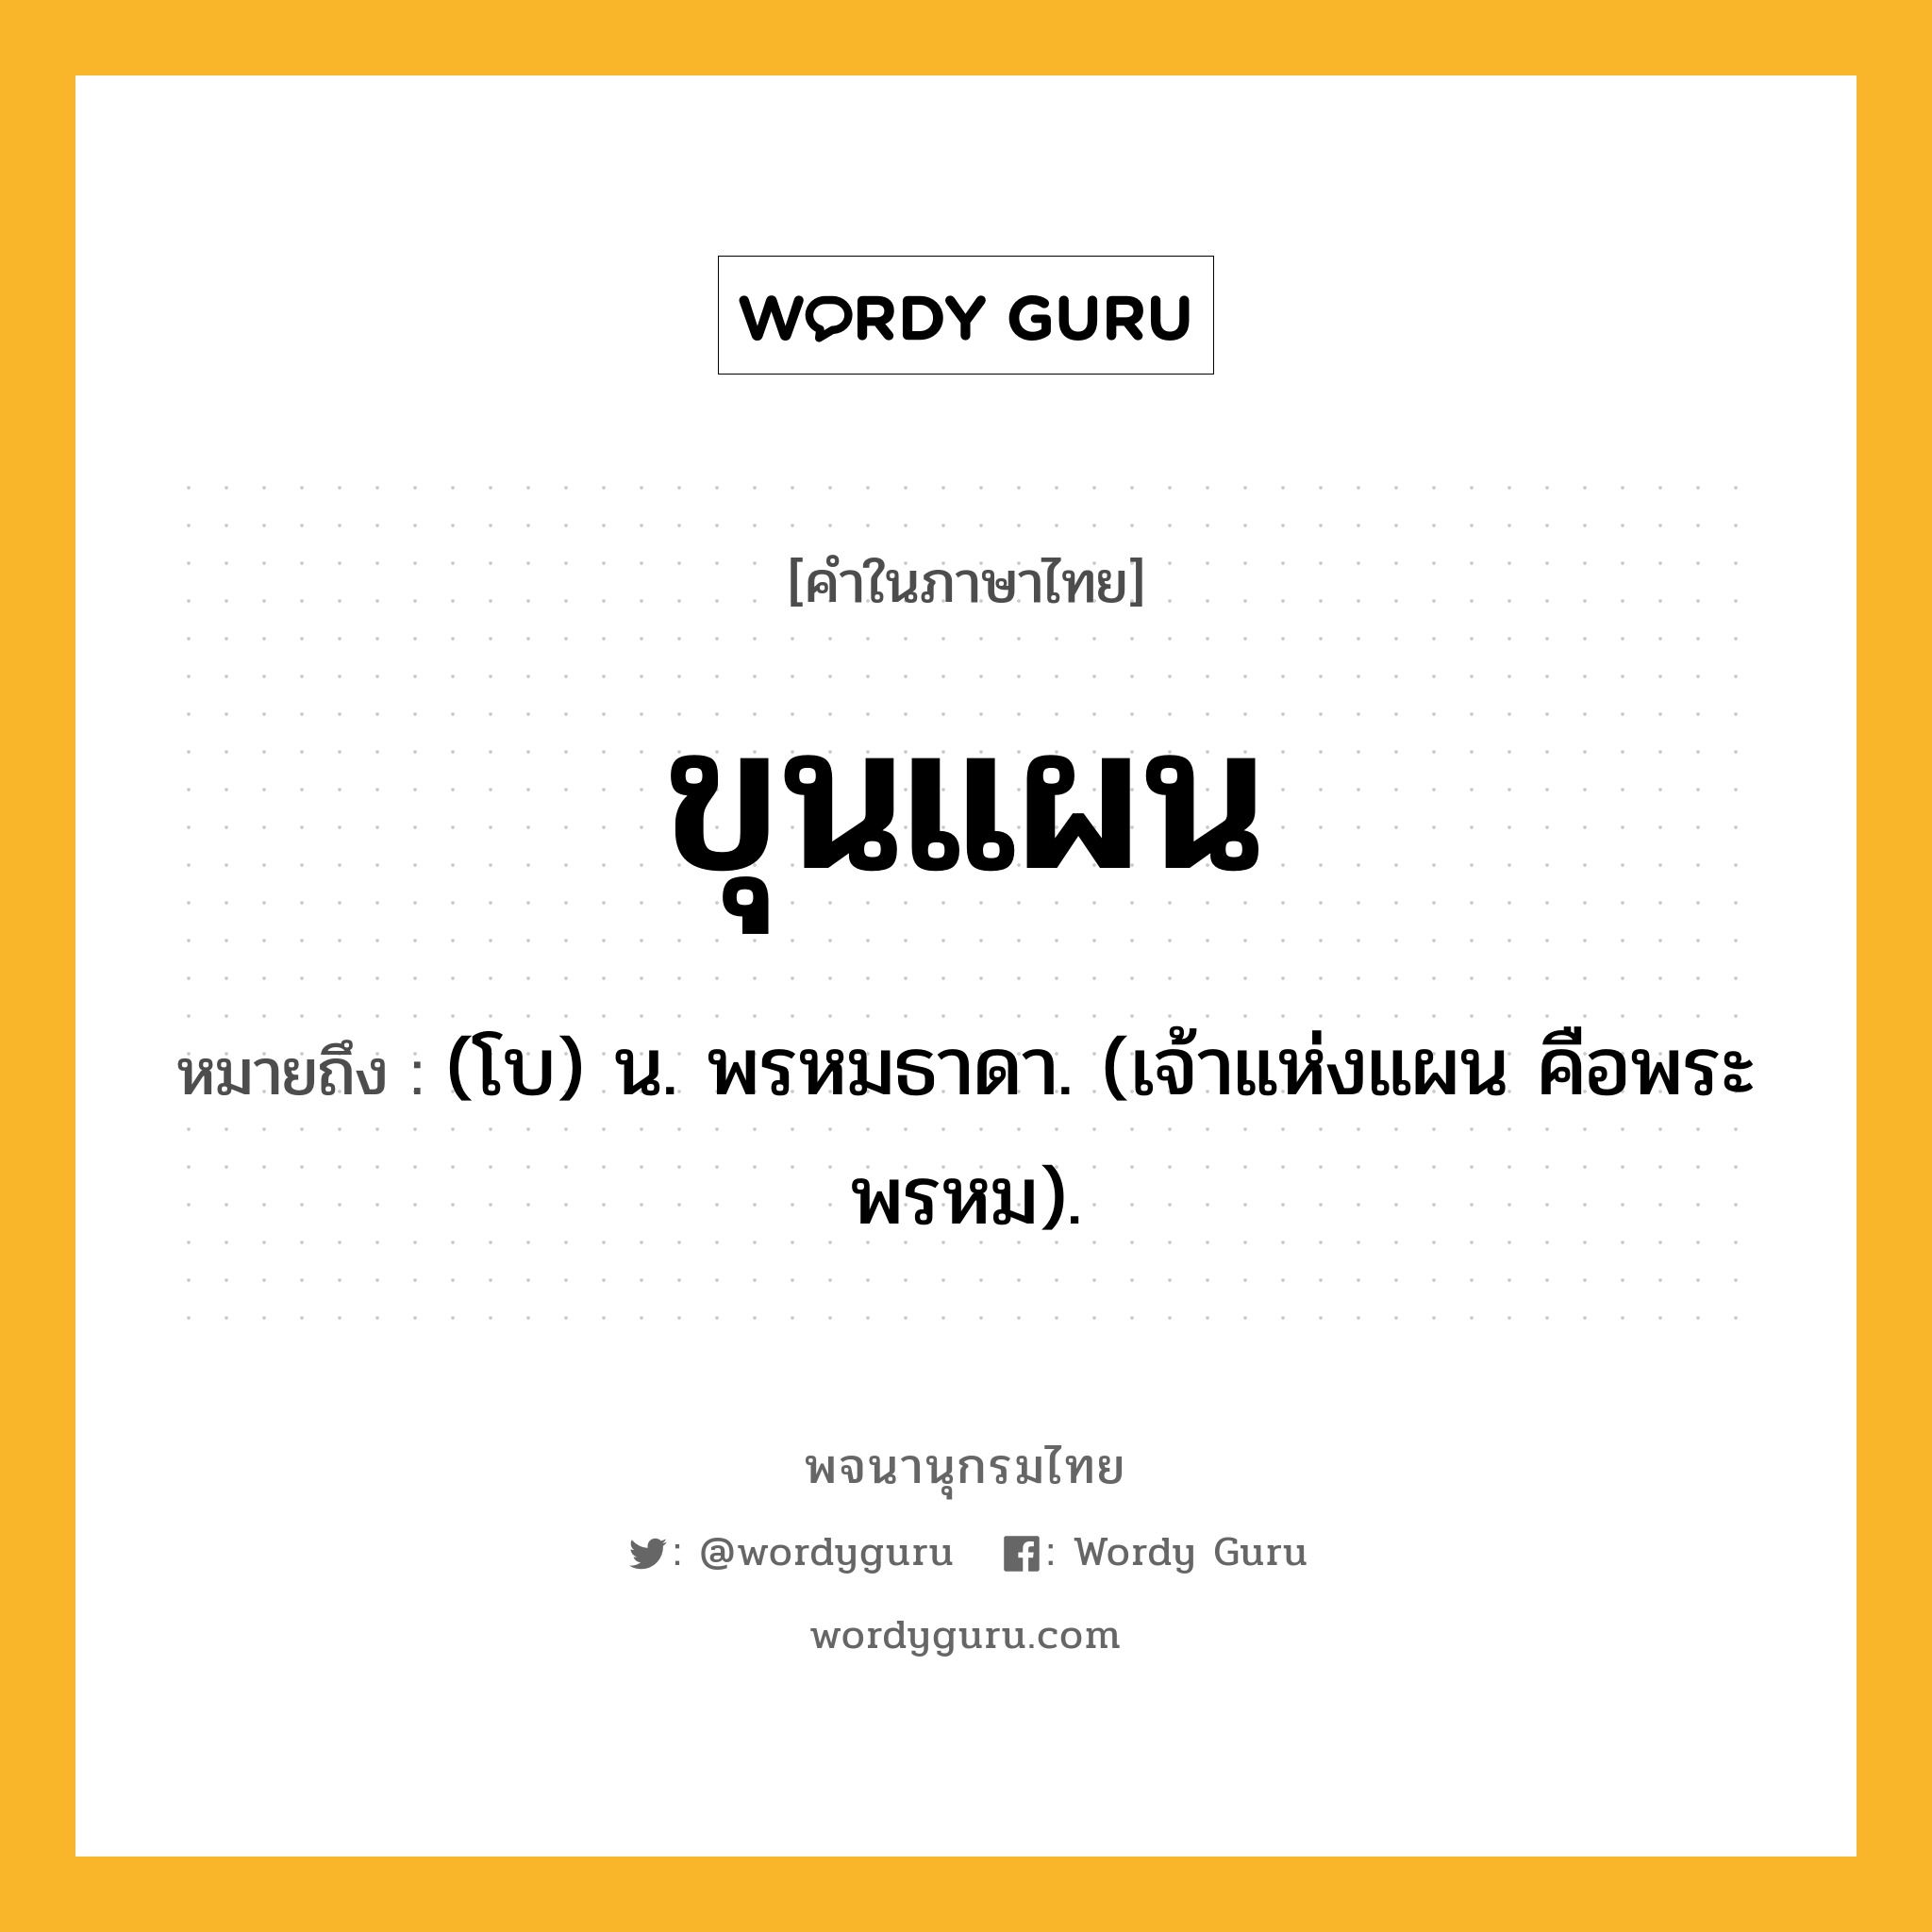 ขุนแผน หมายถึงอะไร?, คำในภาษาไทย ขุนแผน หมายถึง (โบ) น. พรหมธาดา. (เจ้าแห่งแผน คือพระพรหม).